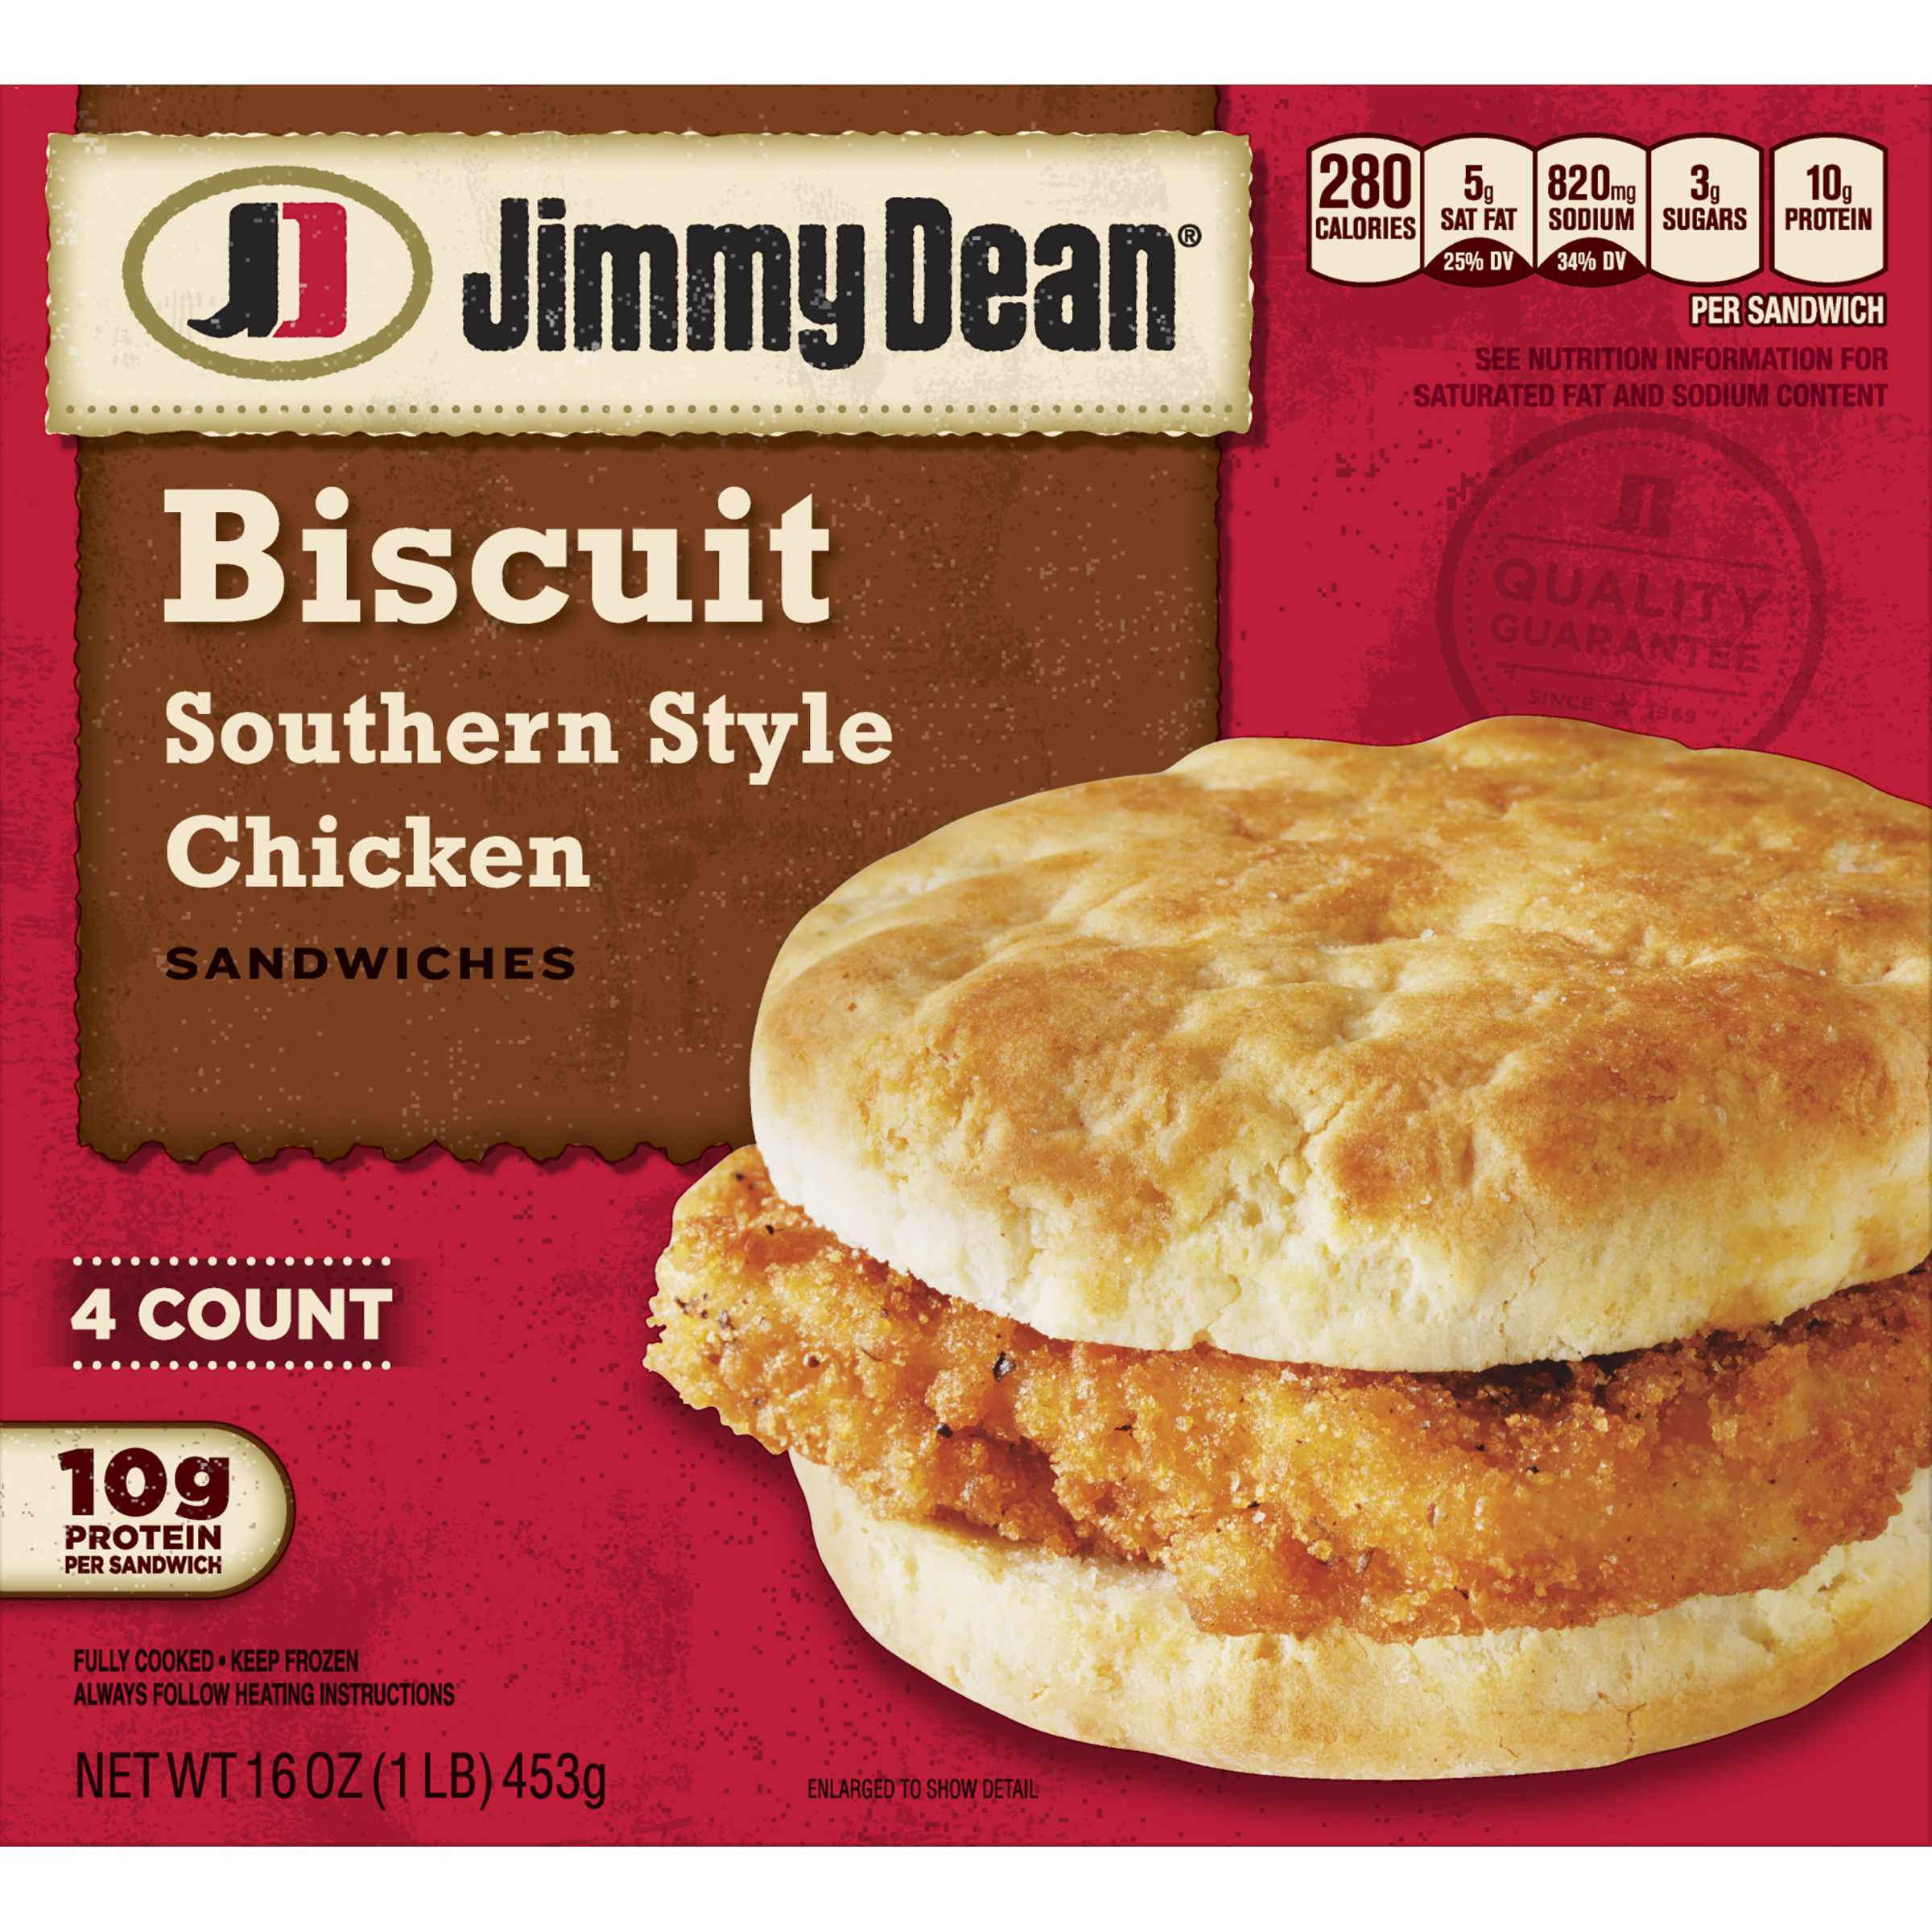 Chicken Biscuit Sandwich
 Jimmy Dean Southern Style Chicken Biscuit Sandwiches 4